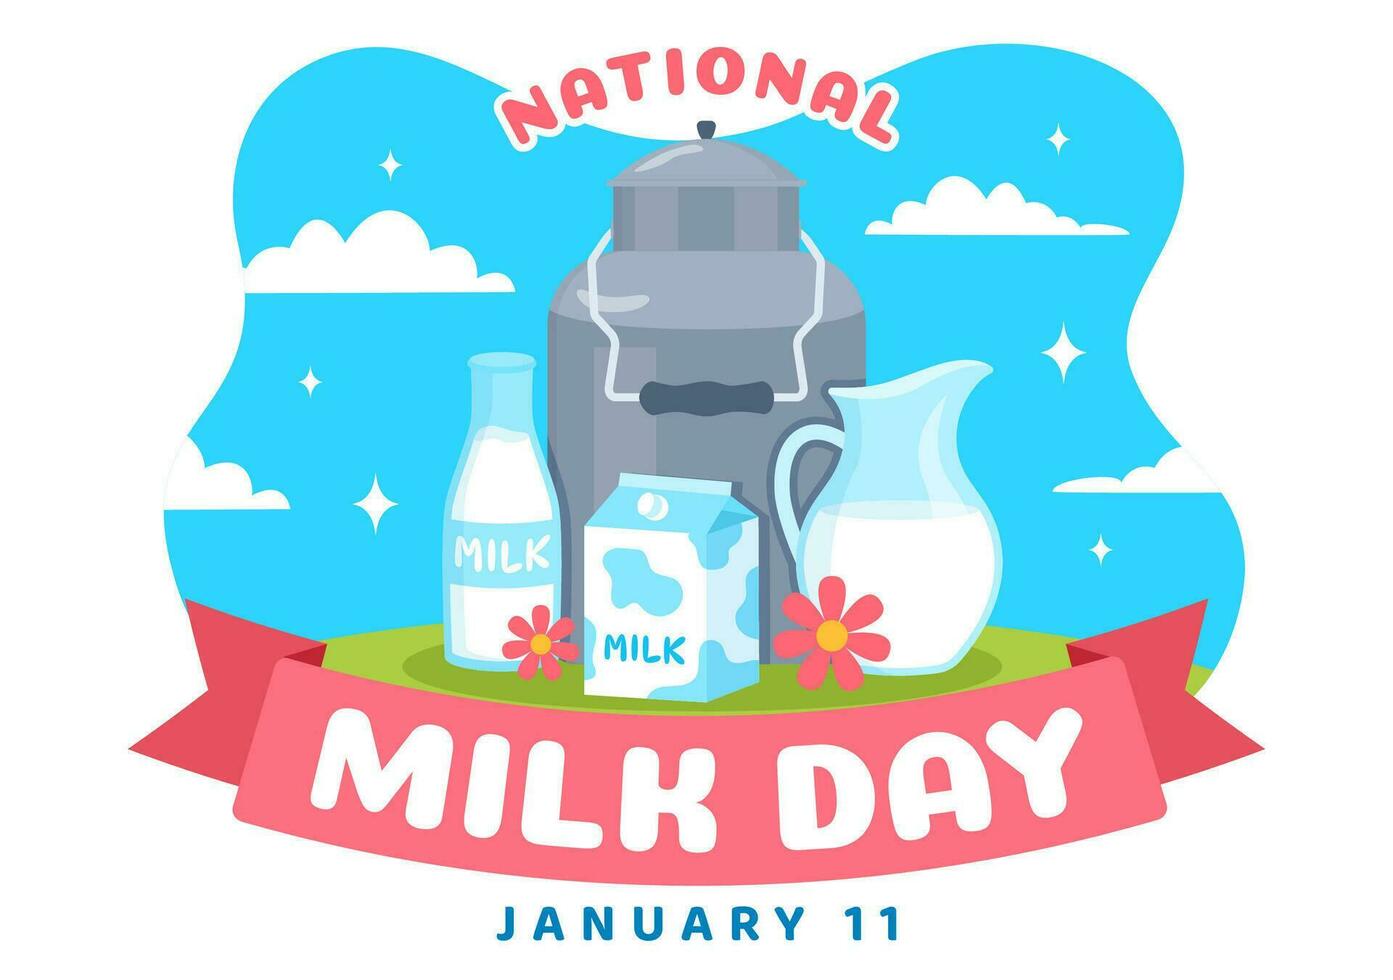 nacional Leche día vector ilustración en 11 enero con leches bebidas y vaca para póster o aterrizaje página en fiesta celebracion dibujos animados antecedentes